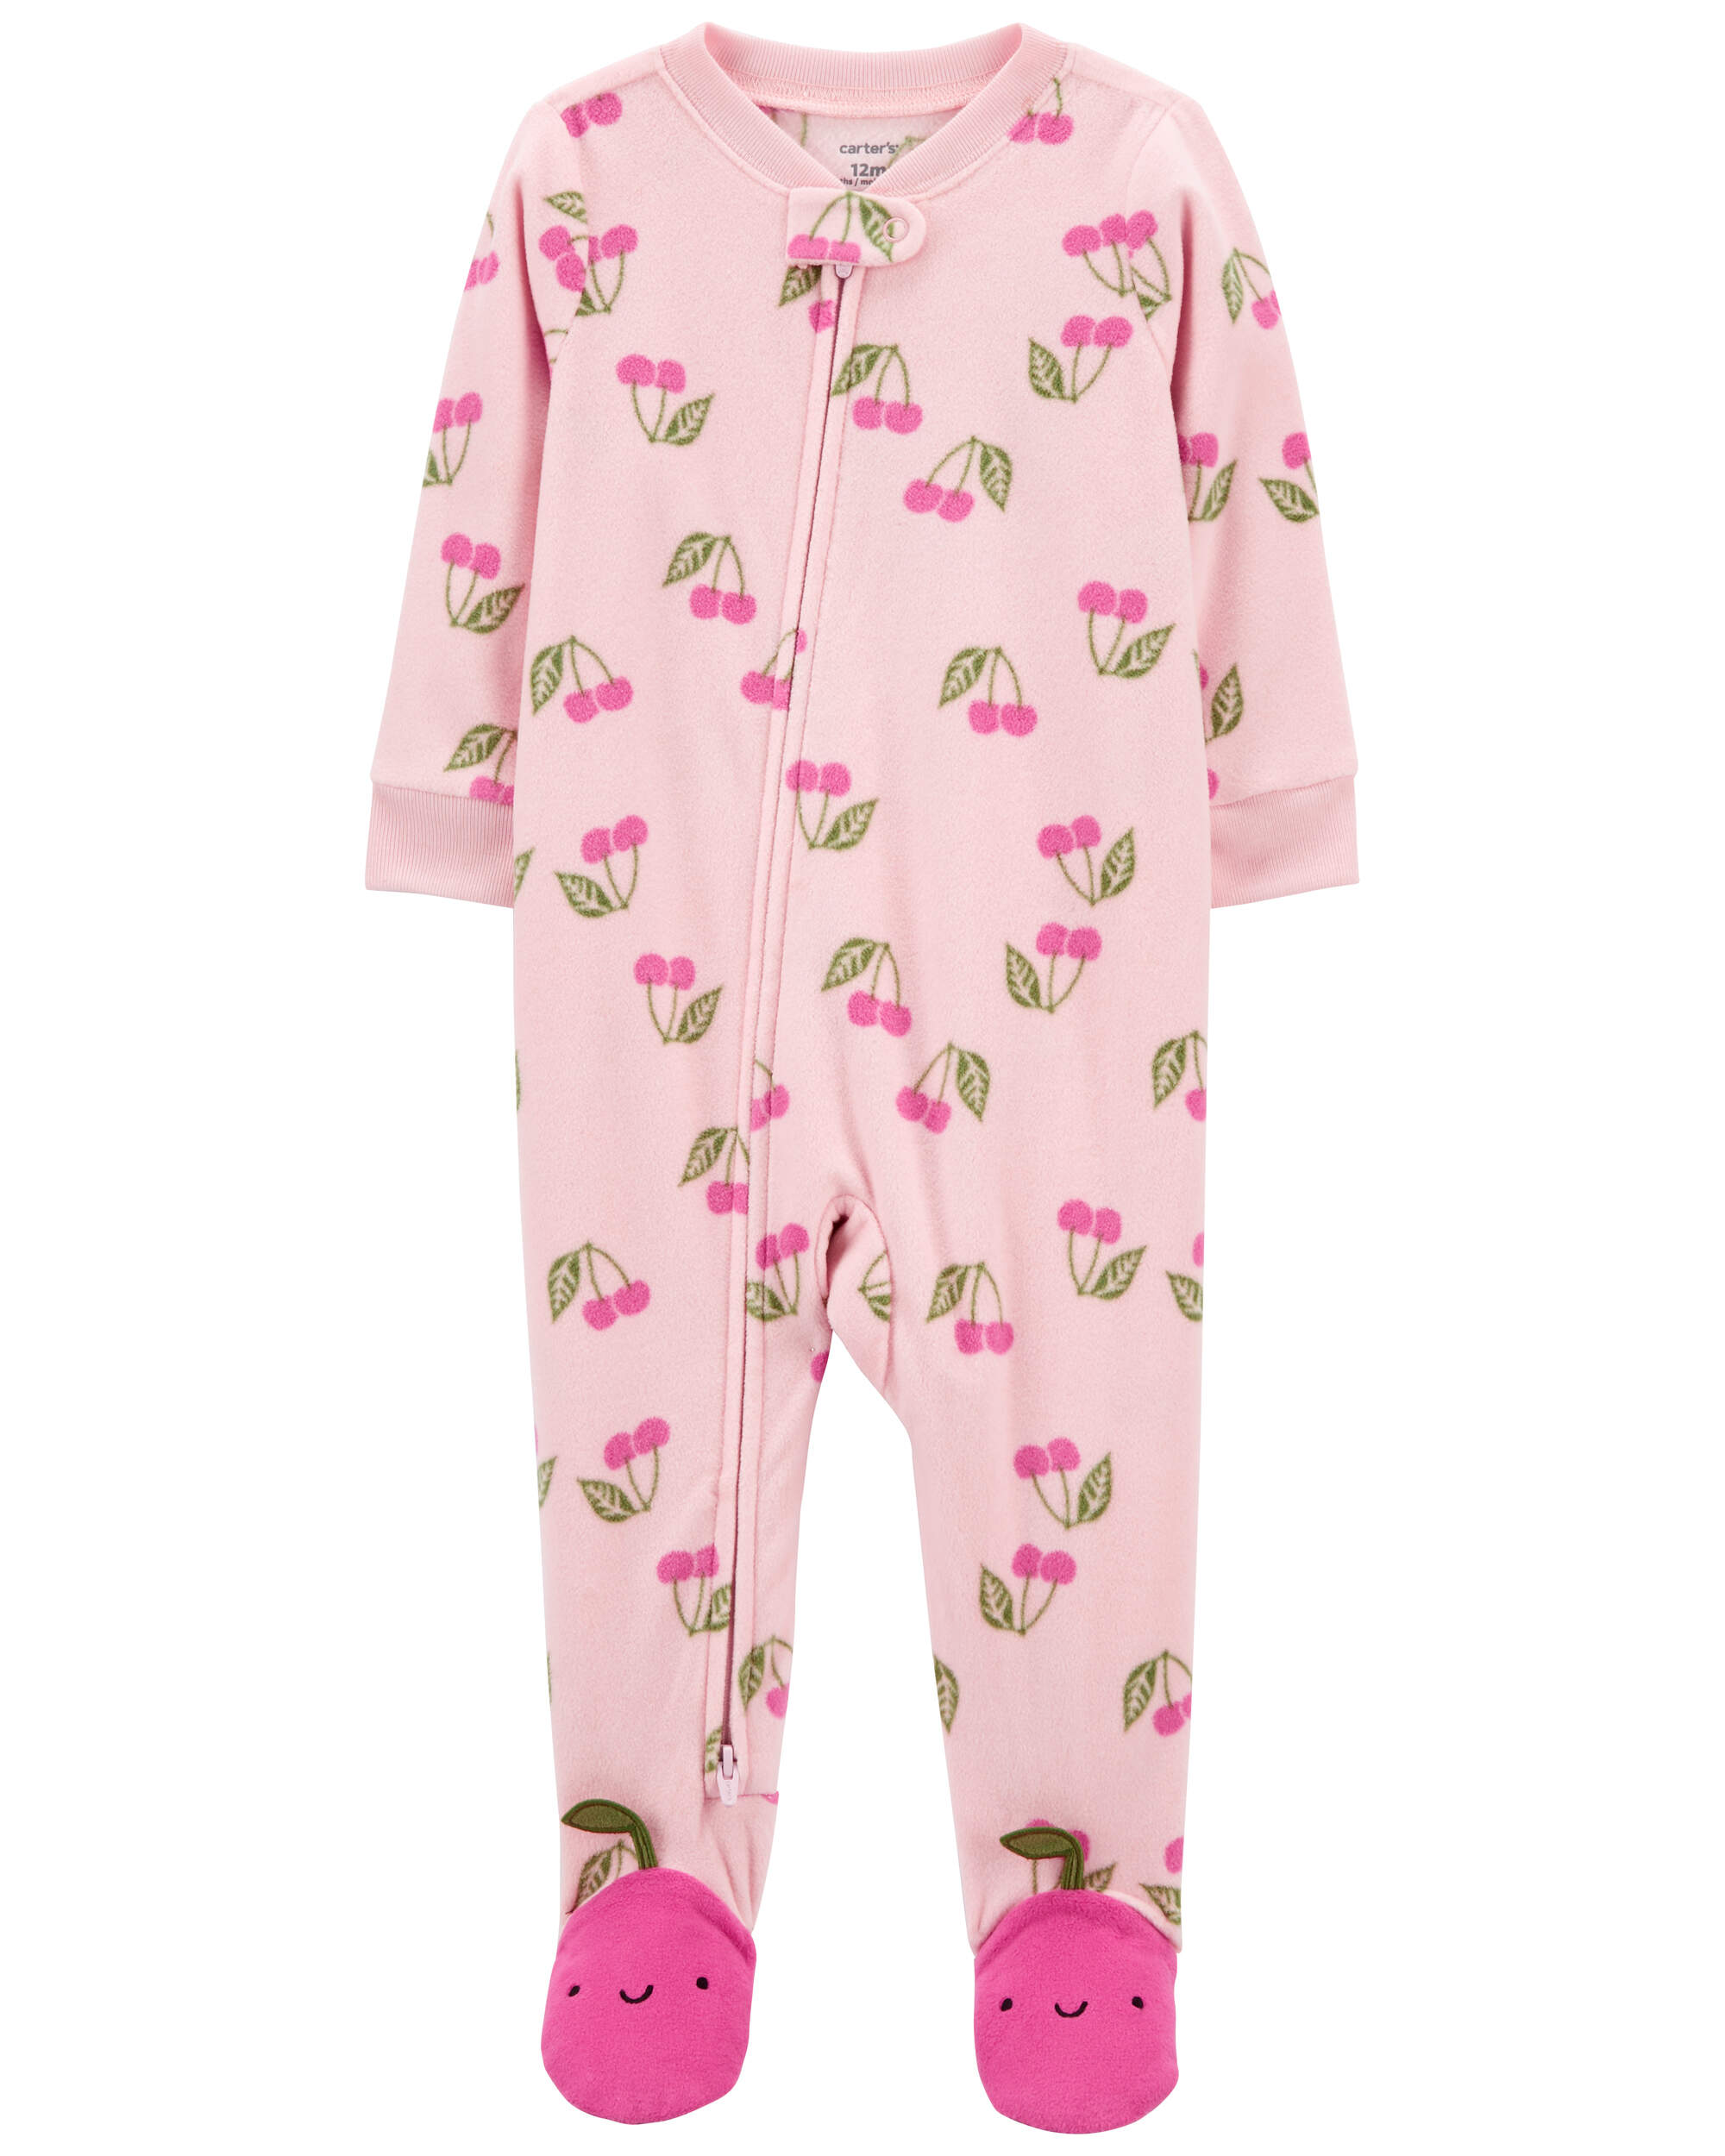 Baby 1-Piece Cherry Fleece Footie Pyjamas